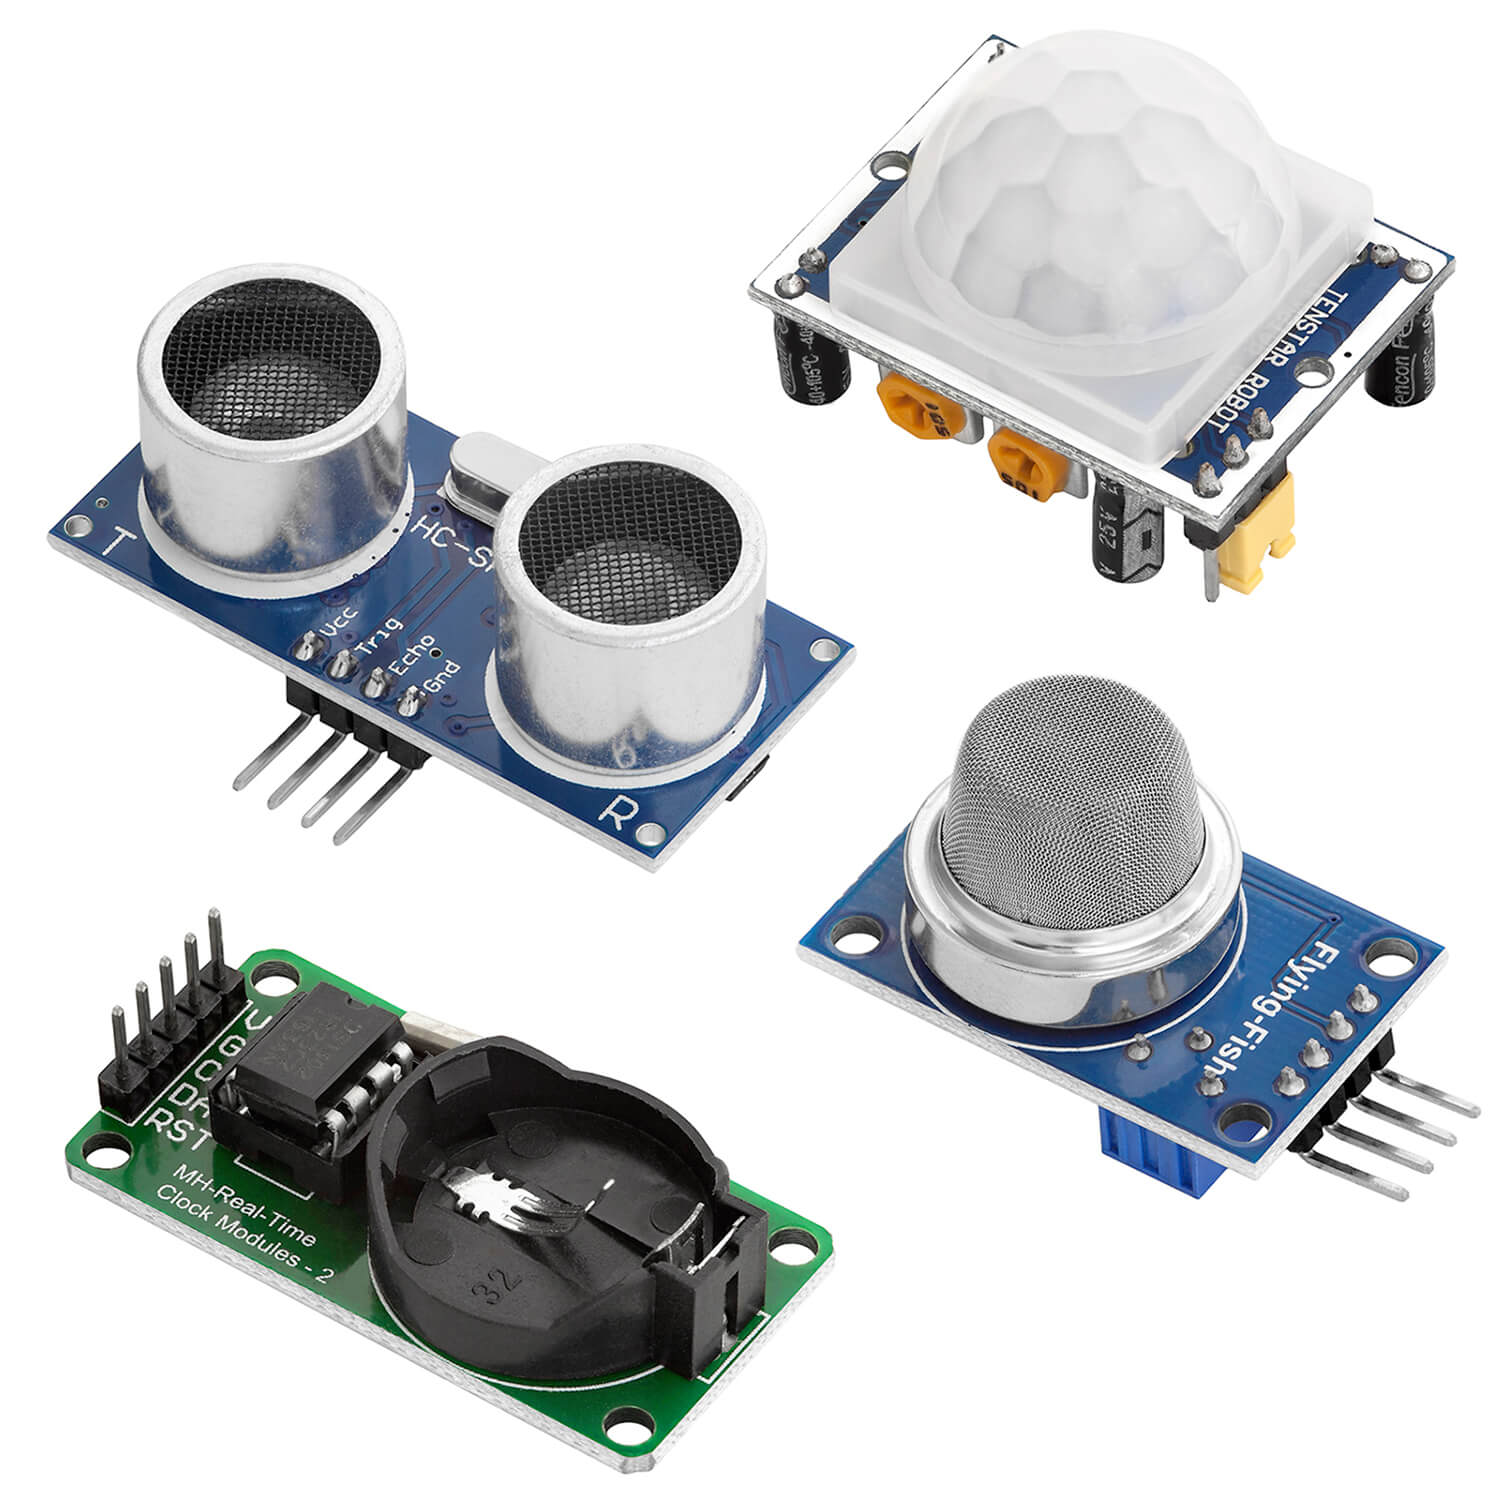 16 in 1 Kit Zubehörset mit Sensoren und Modulen für Raspberry Pi kompatibel mit Arduino